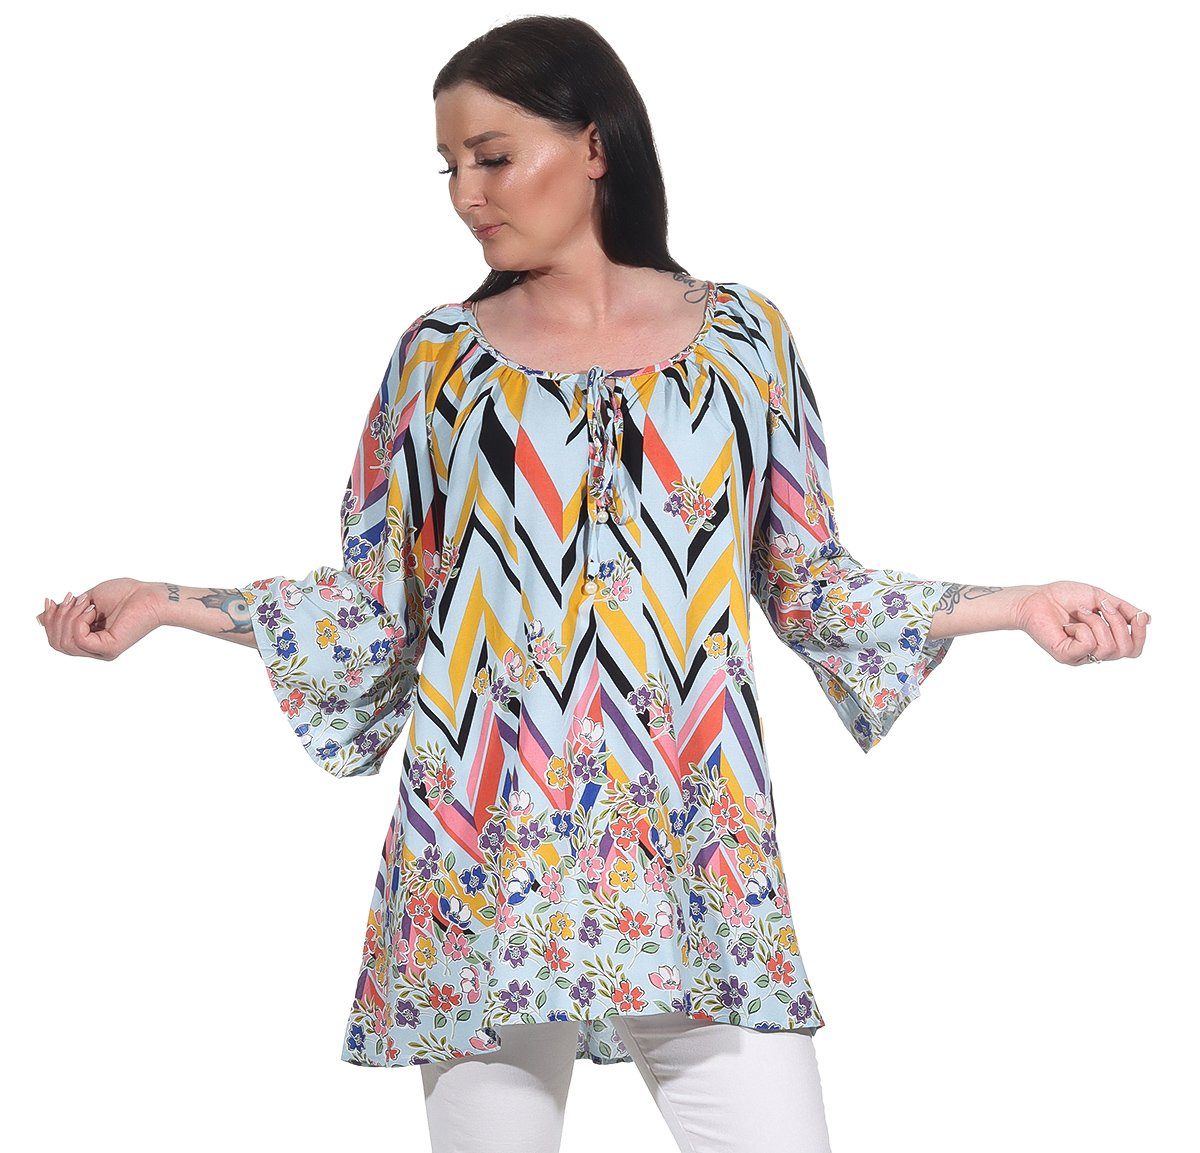 Aurela Damenmode Oversize-Shirt Damen Bluse leichtes Strandshirt sommerliche Tunika angenehmes Baumwollmaterial, Gesamtlänge: 76 - 78cm Hellblau